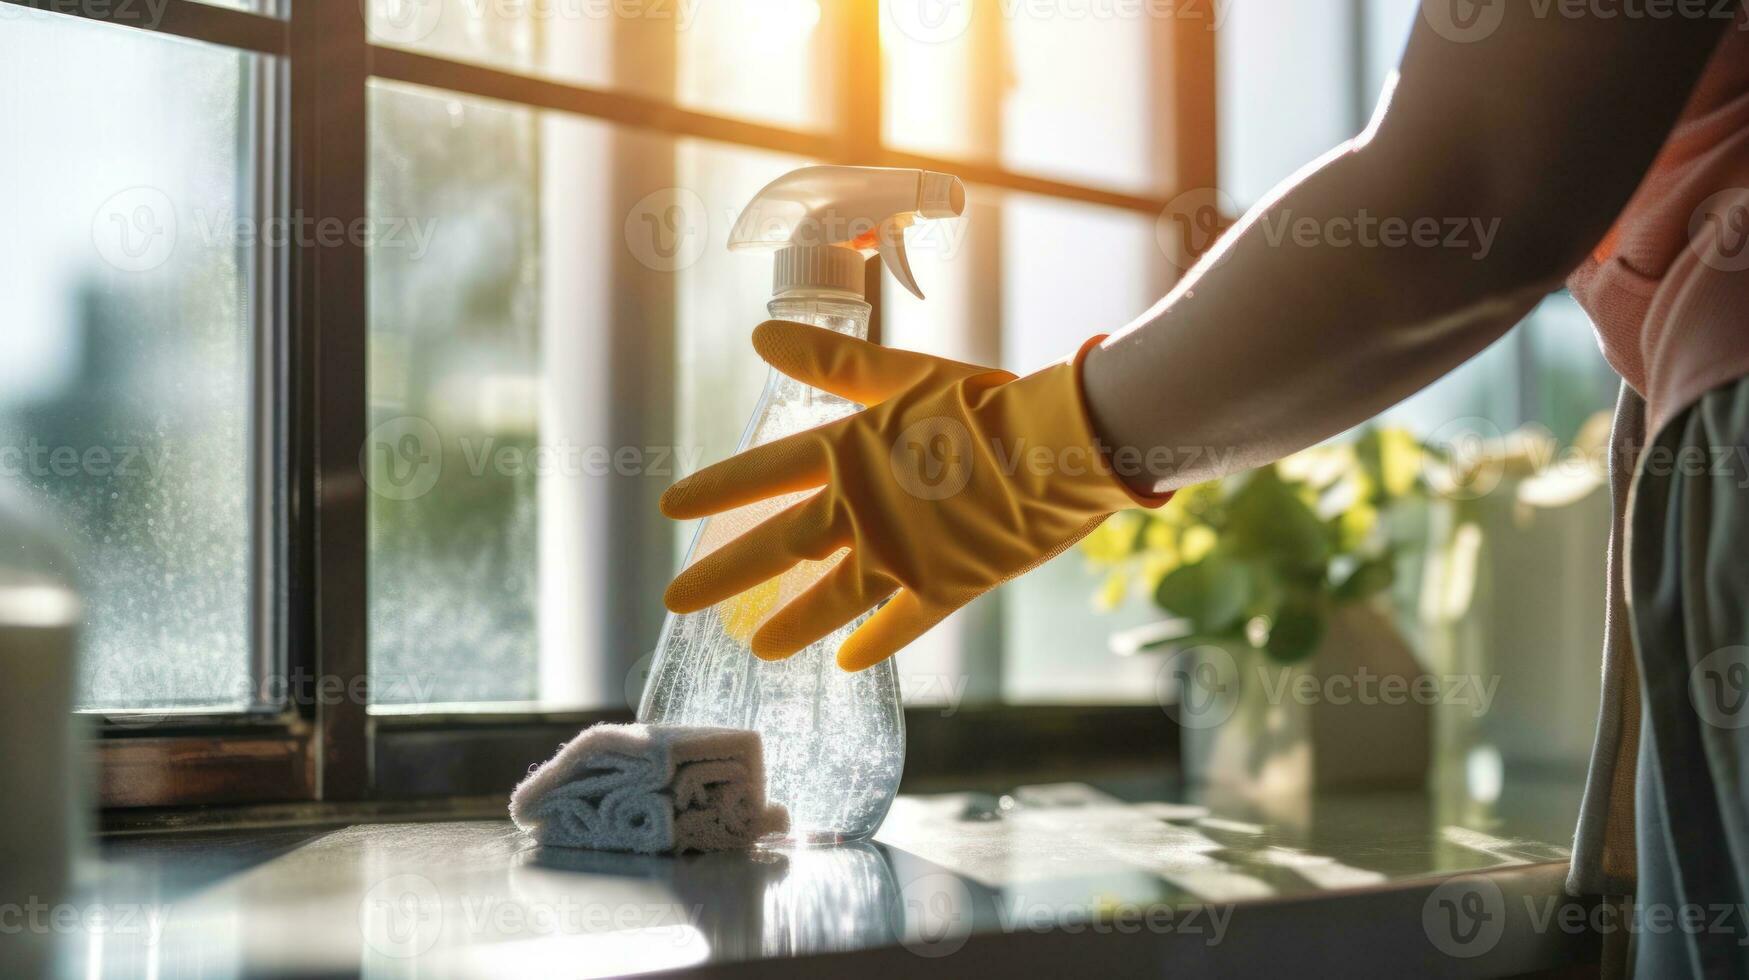 un mano pulverización y limpiando el ventana de el casa foto